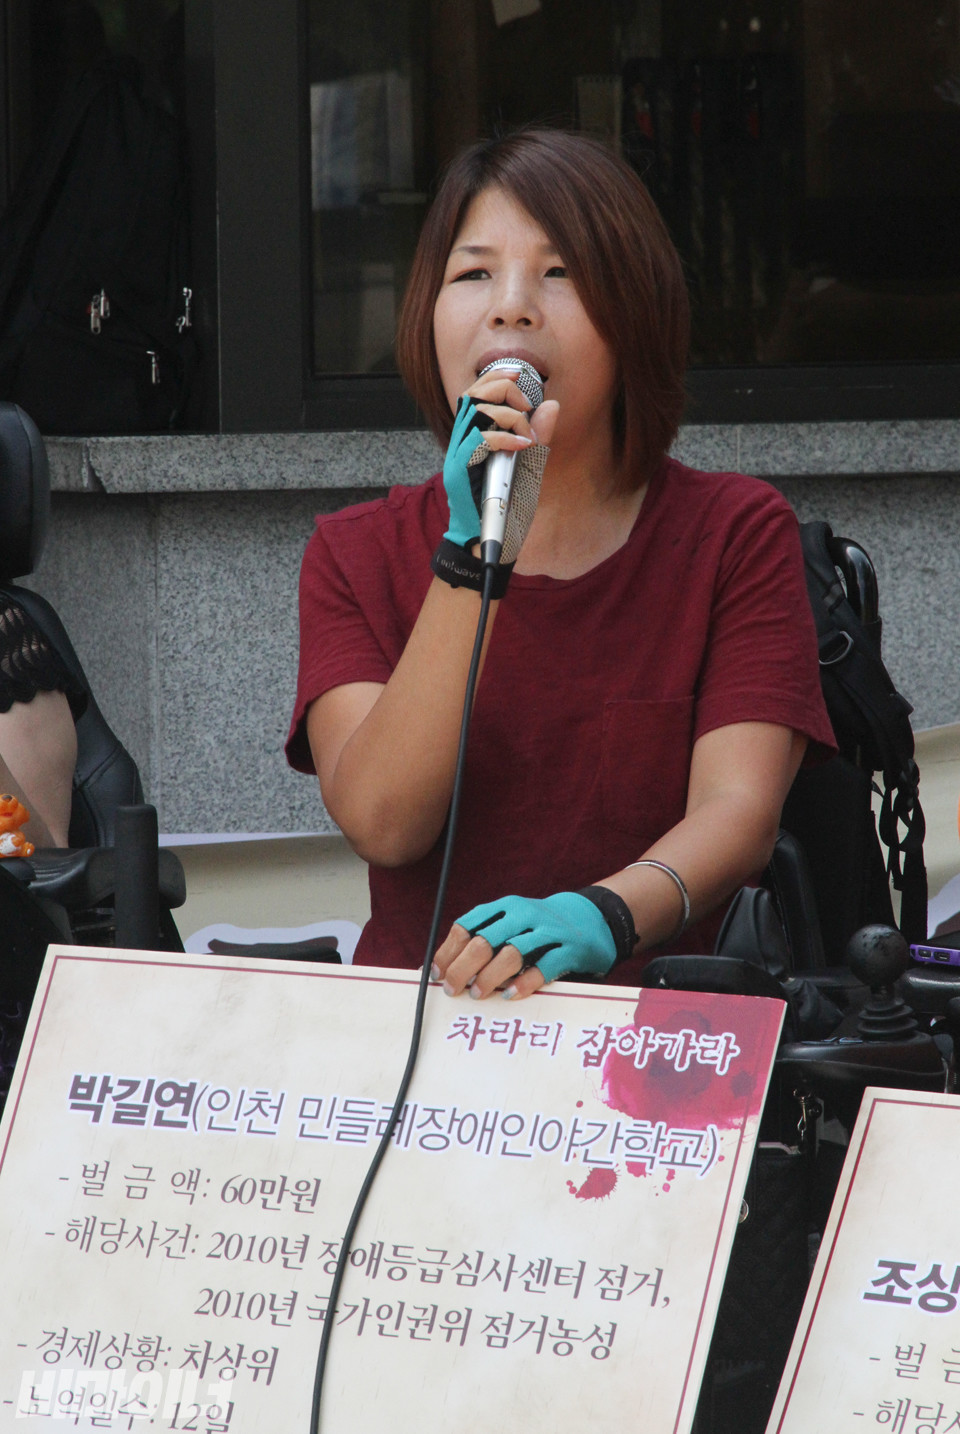 2012년 8월, 중증장애인활동가들이 장애인운동 과정에서 쌓인 벌금에 대해 항의하며 노역투쟁을 결의했다. 당시 노역 투쟁에 참여한 박길연 대표의 모습. 